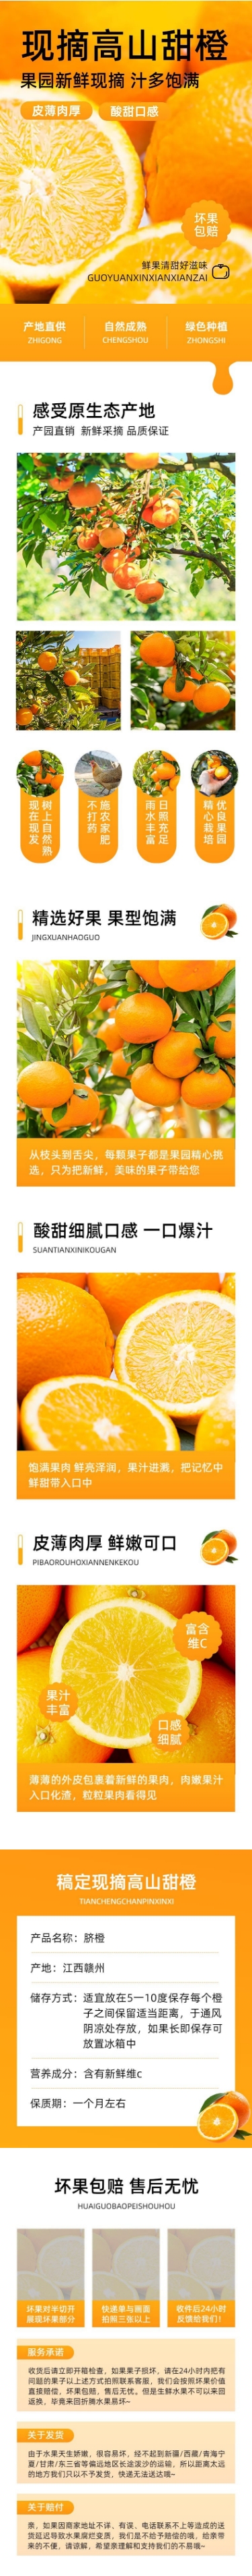 生鲜水果橙子商品详情页